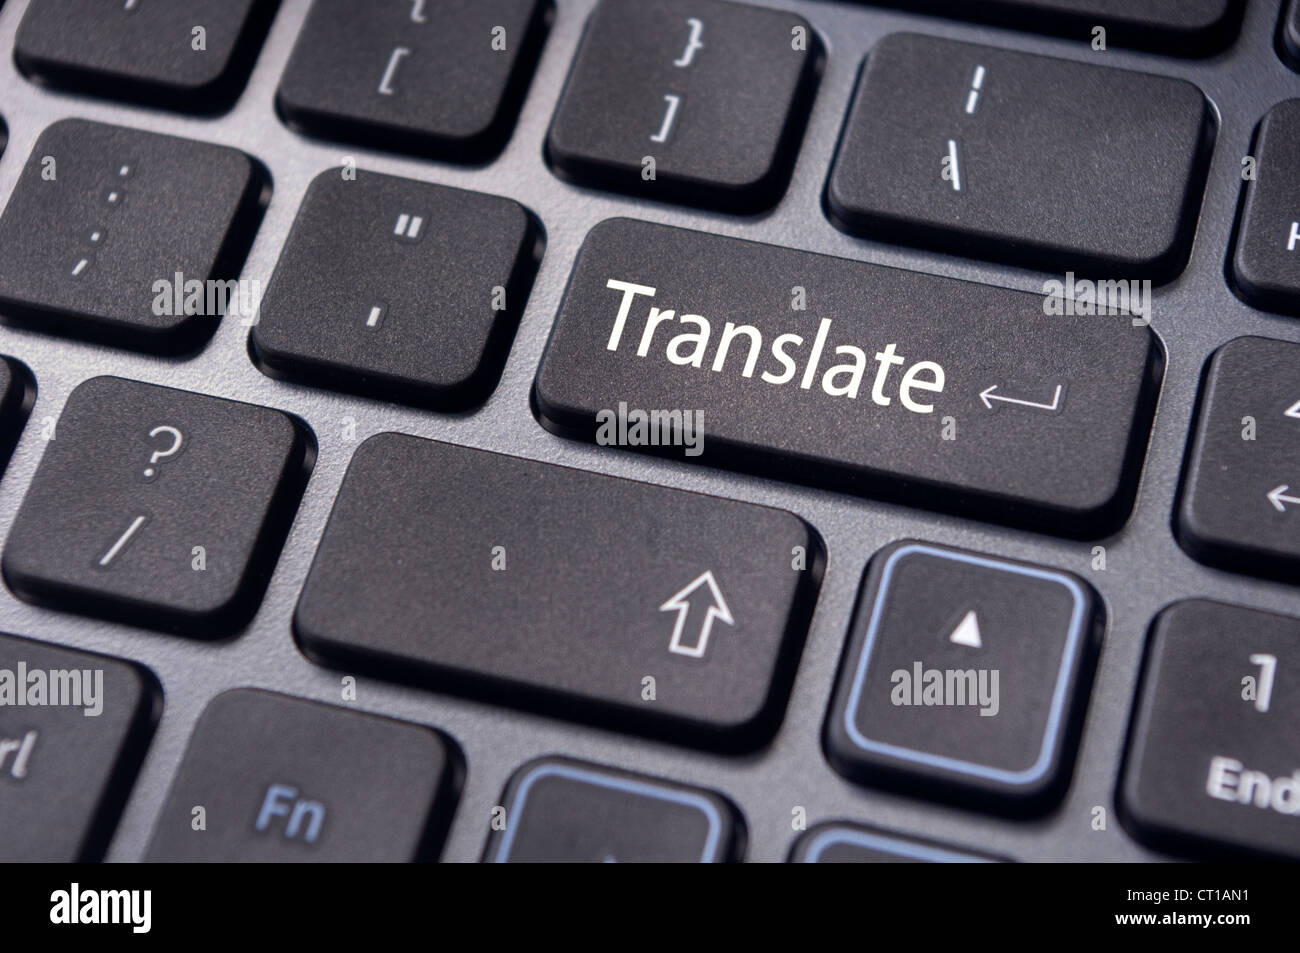 Translate touche sur clavier de l'ordinateur, la traduction des langues. Banque D'Images